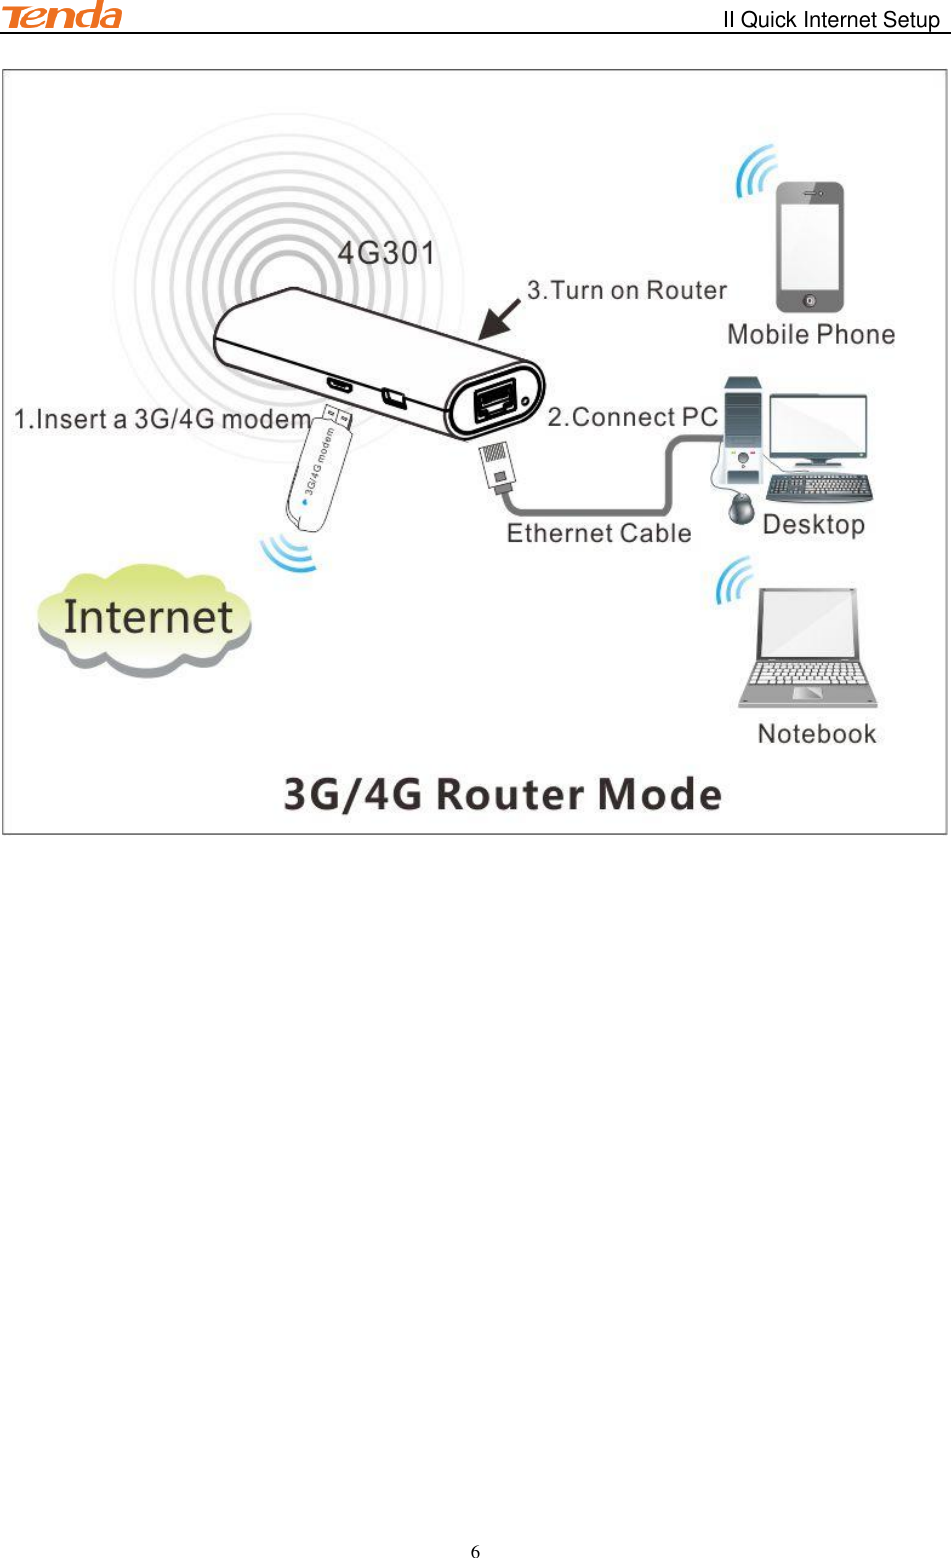                                                        II Quick Internet Setup         6  